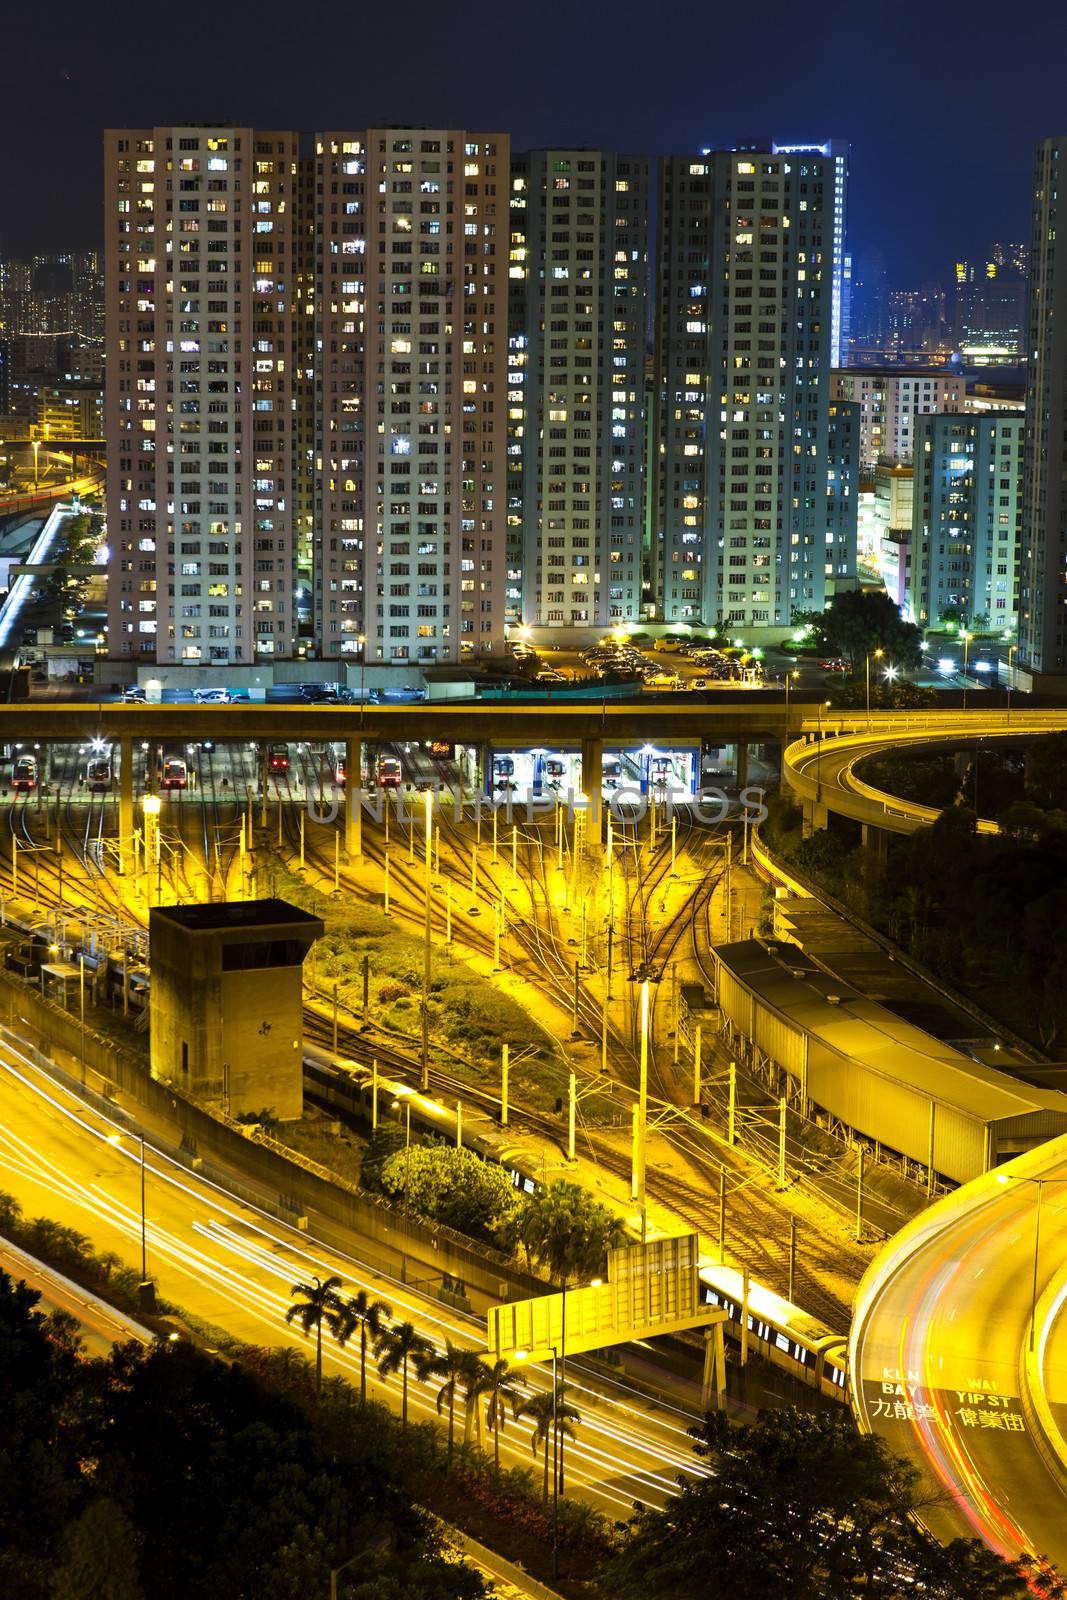 Hong Kong busy downtown at night